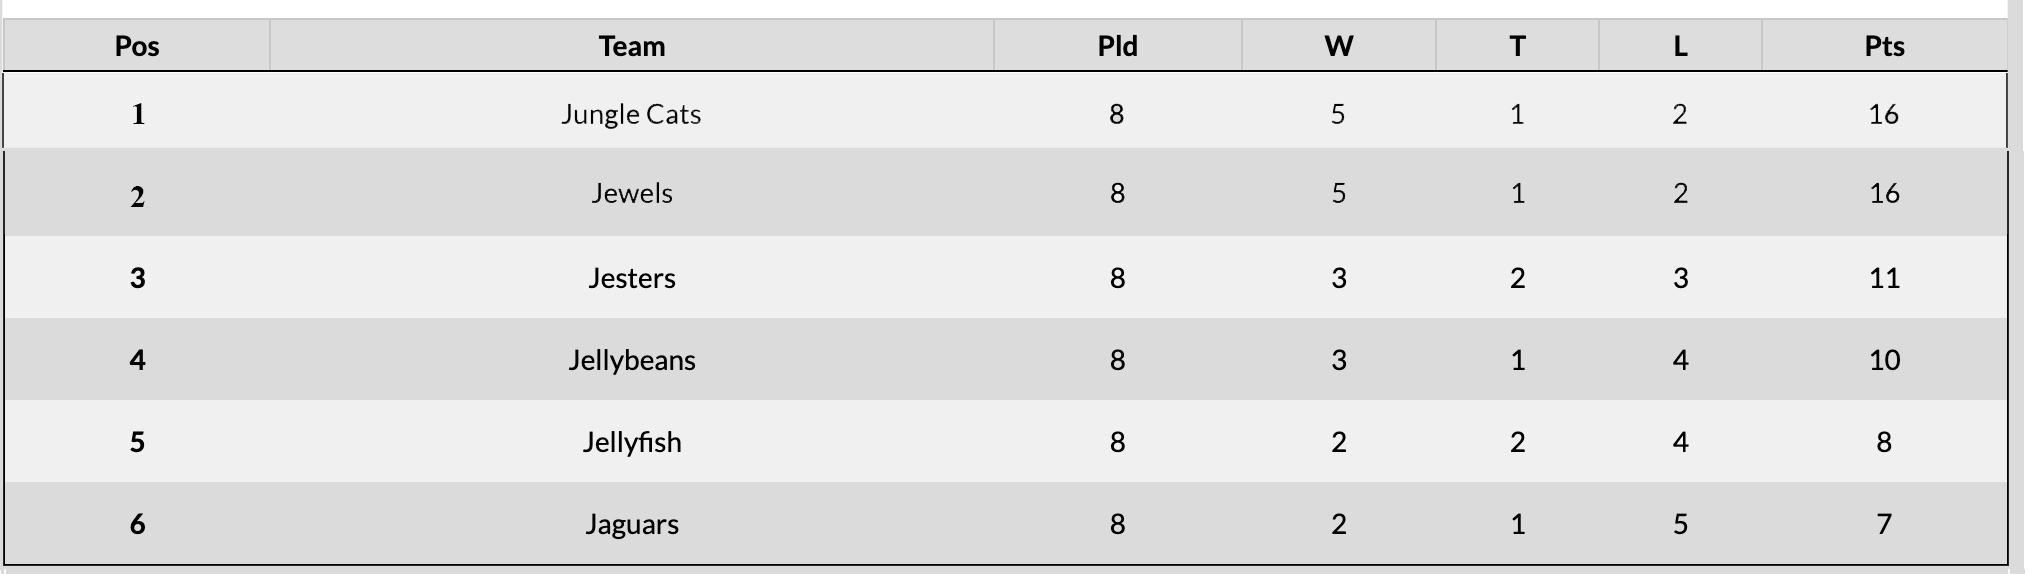 U10 Standings